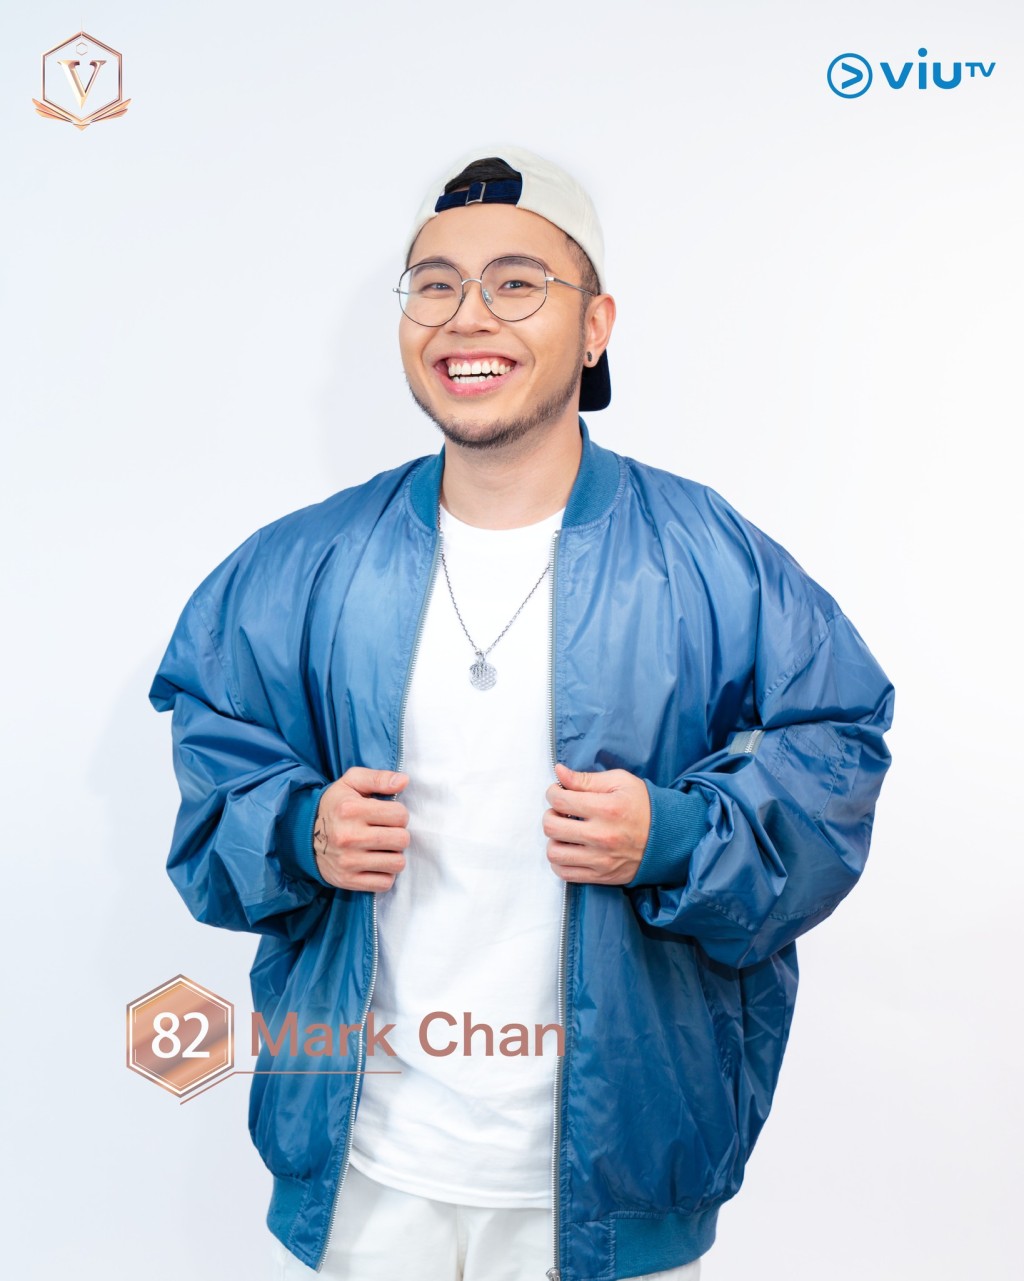 鴻翔（Mark Chan） 年齡： 30 職業：音樂人 擅長：唱歌、結他、被Friendzone IG：its_markchan